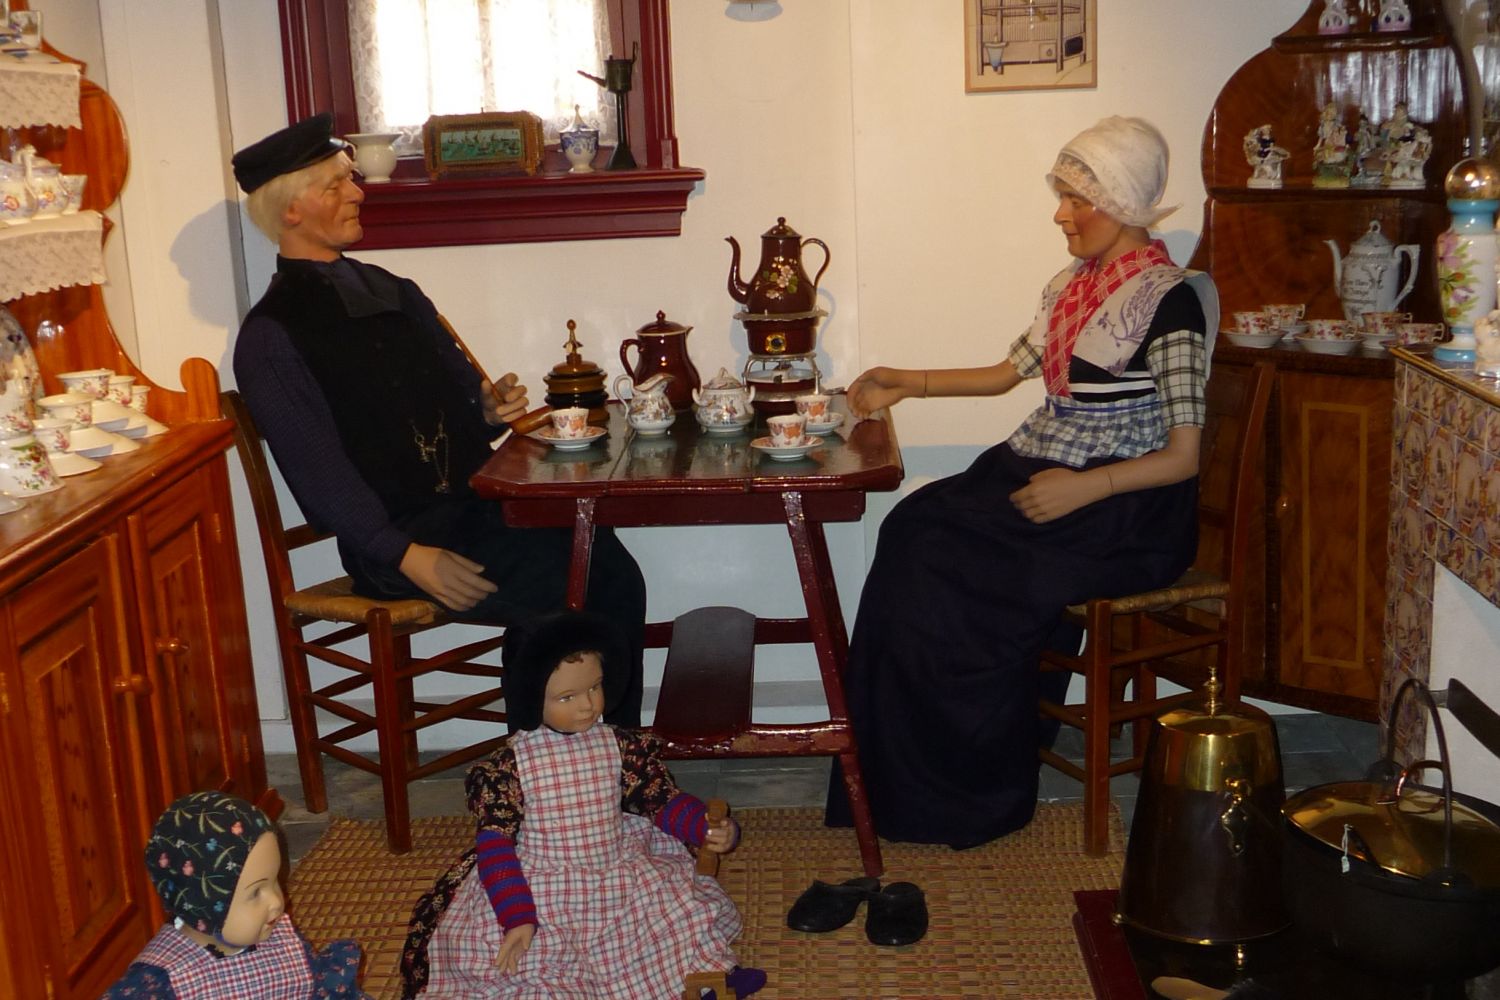 Een boer en een boerin in Bunschoter klederdracht zitten in de keuken aan tafel met een kopje koffie terwijl twee kinderen op de grond zitten te spelen.